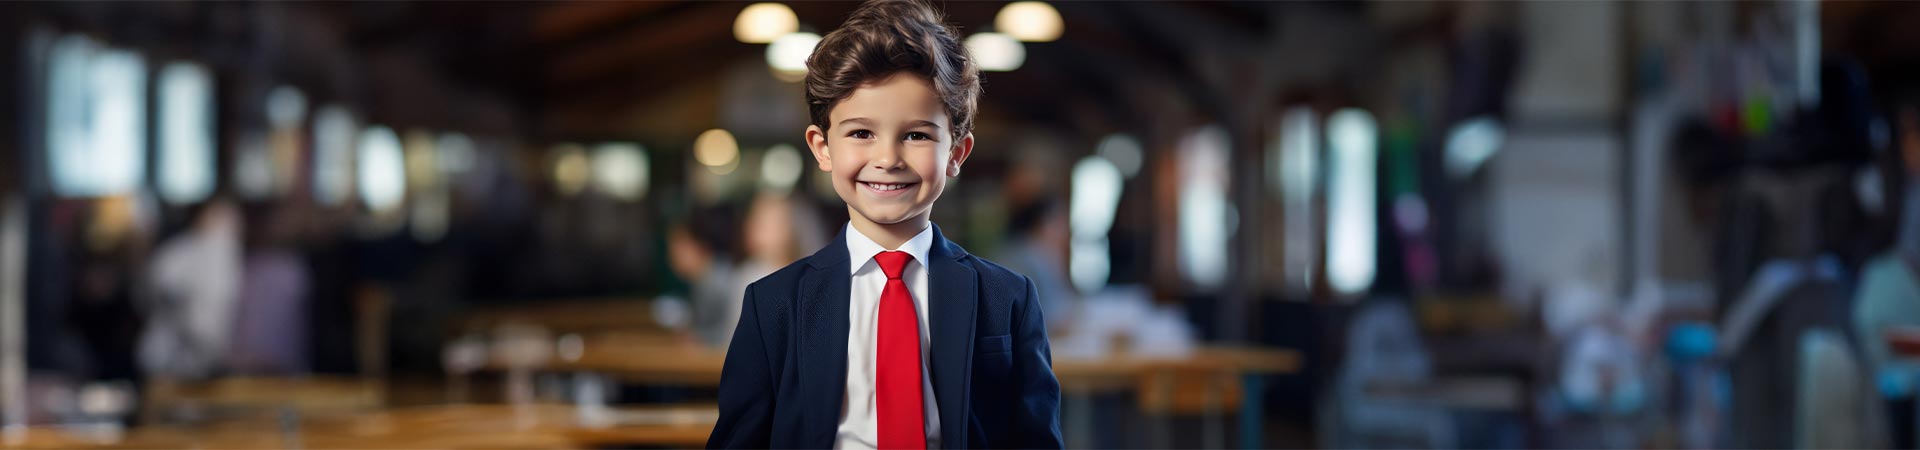 Kinderkrawatten Jungenkrawatten - Krawatten für Jungs